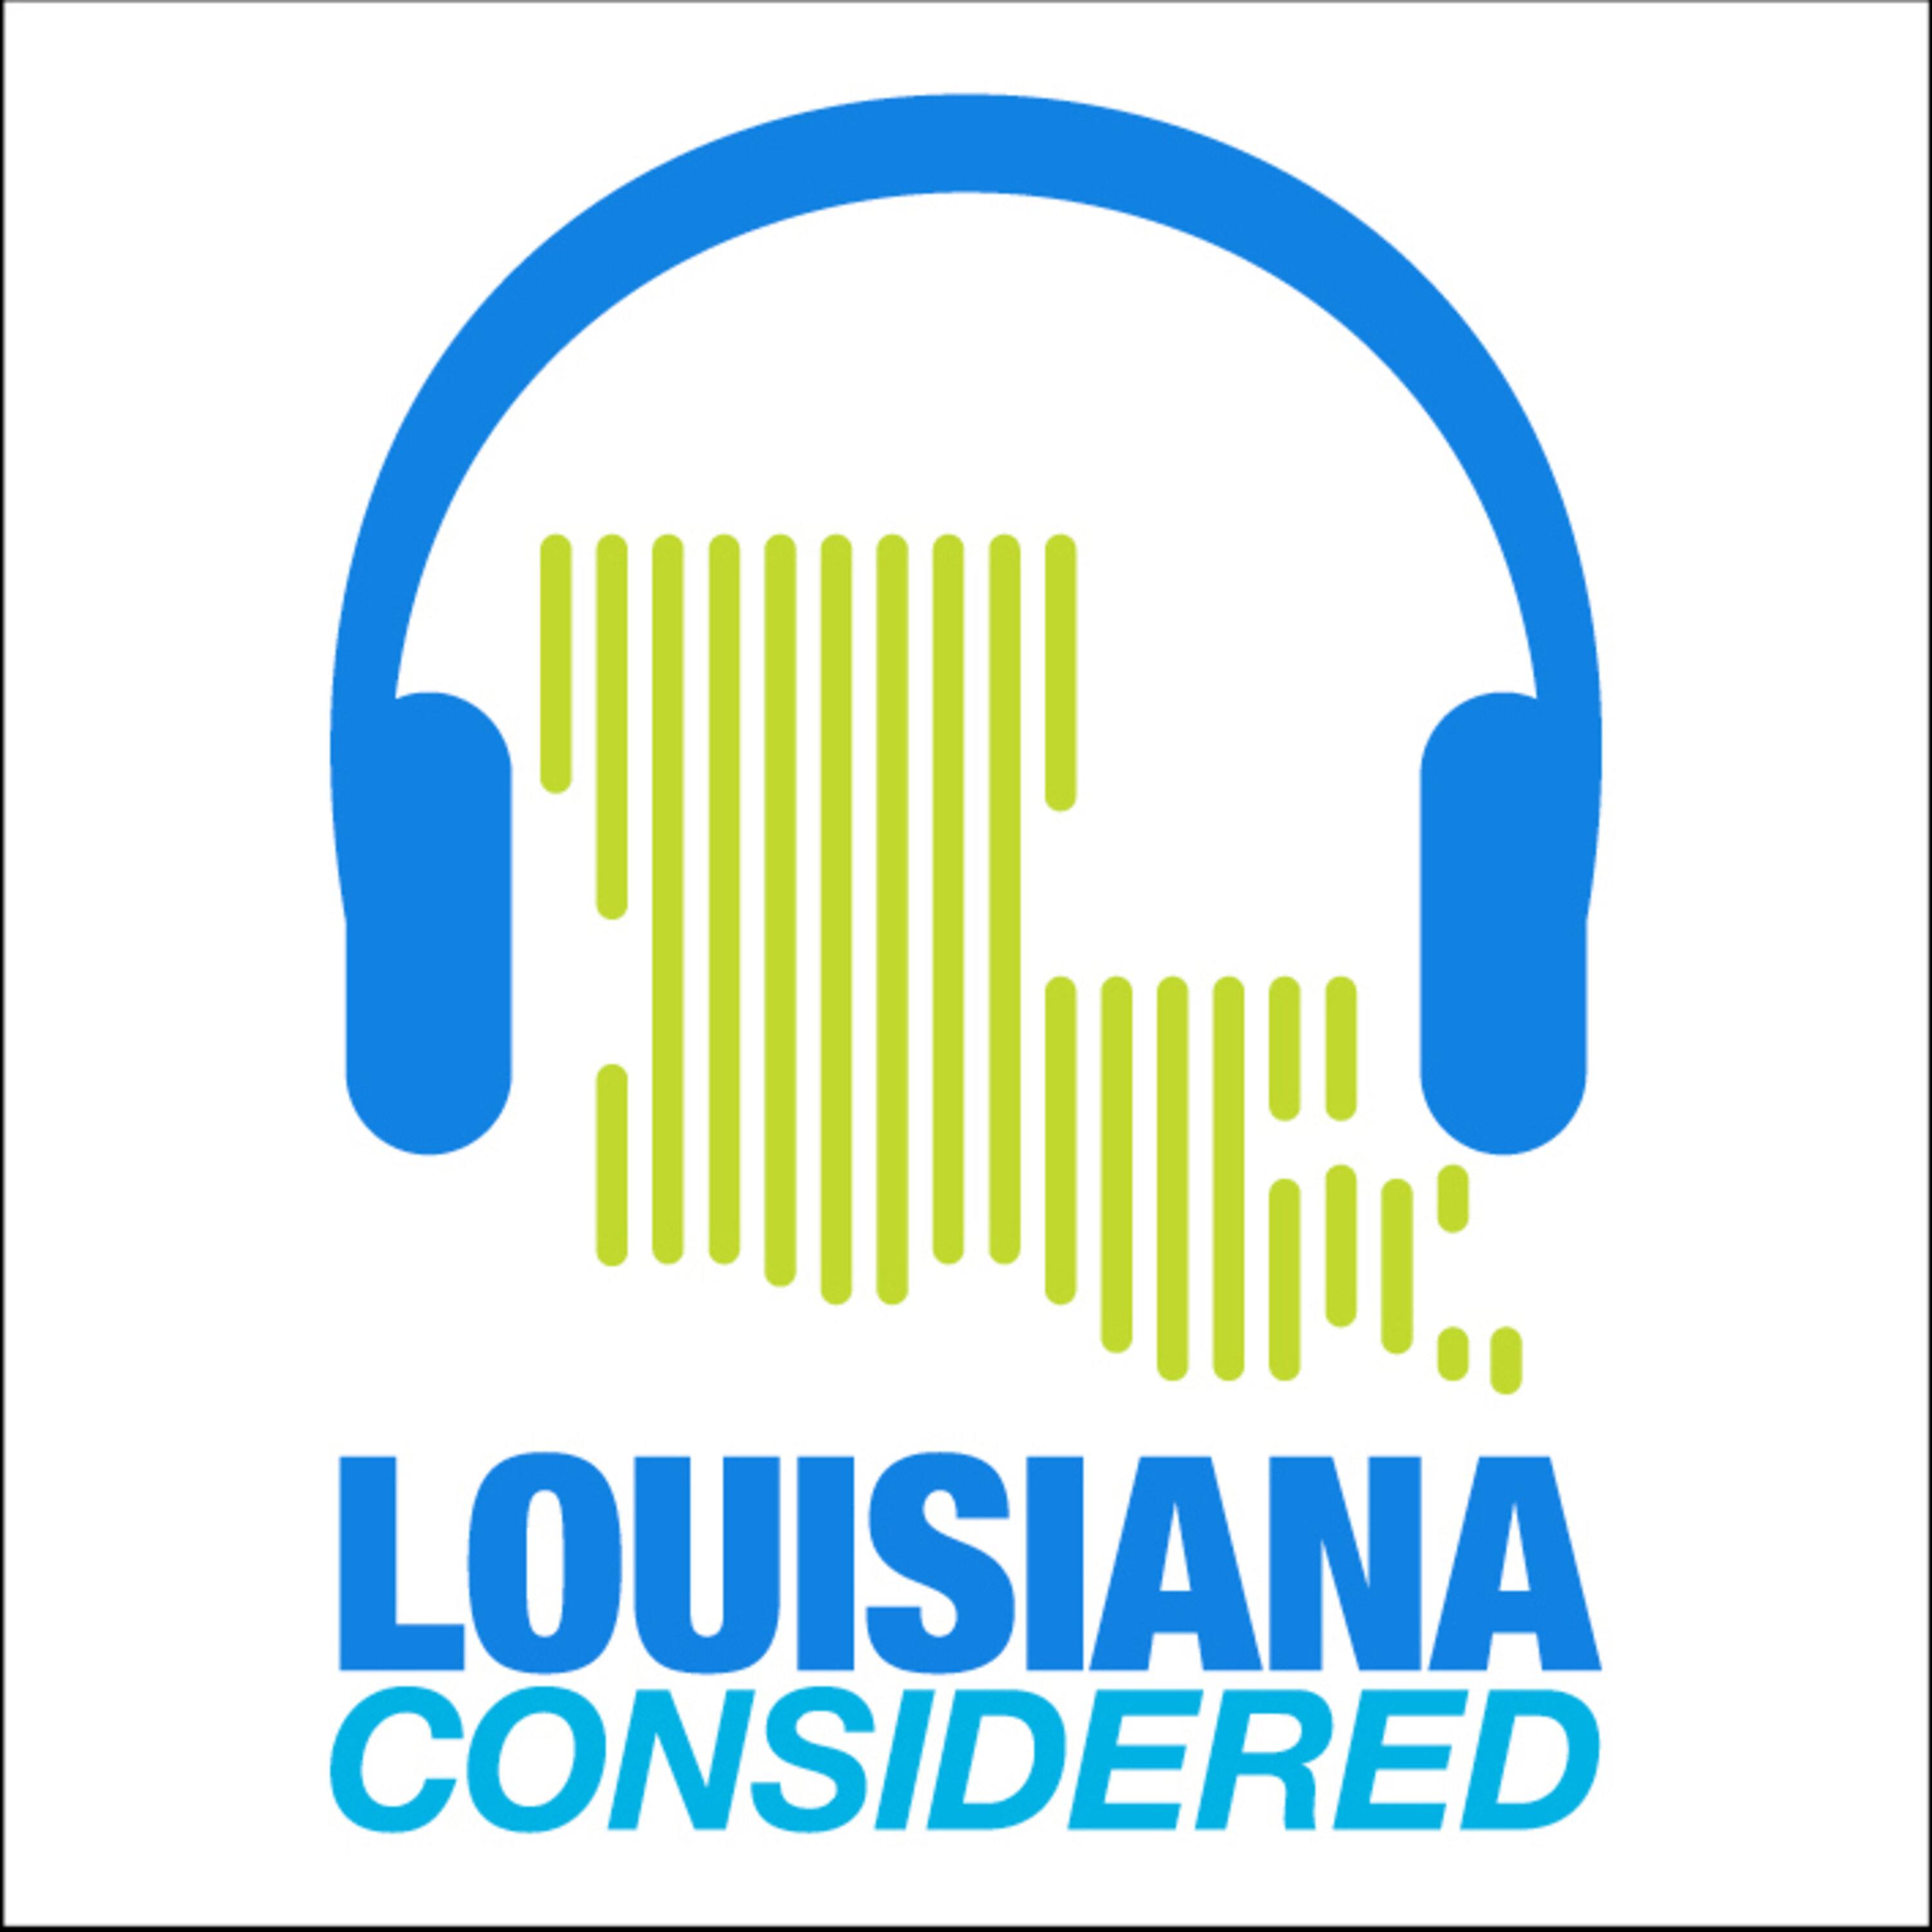 Thumbnail for "Louisiana Considered: Louisiana’s Economic Recovery, The History Of Asian Immigrants In South Louisiana".